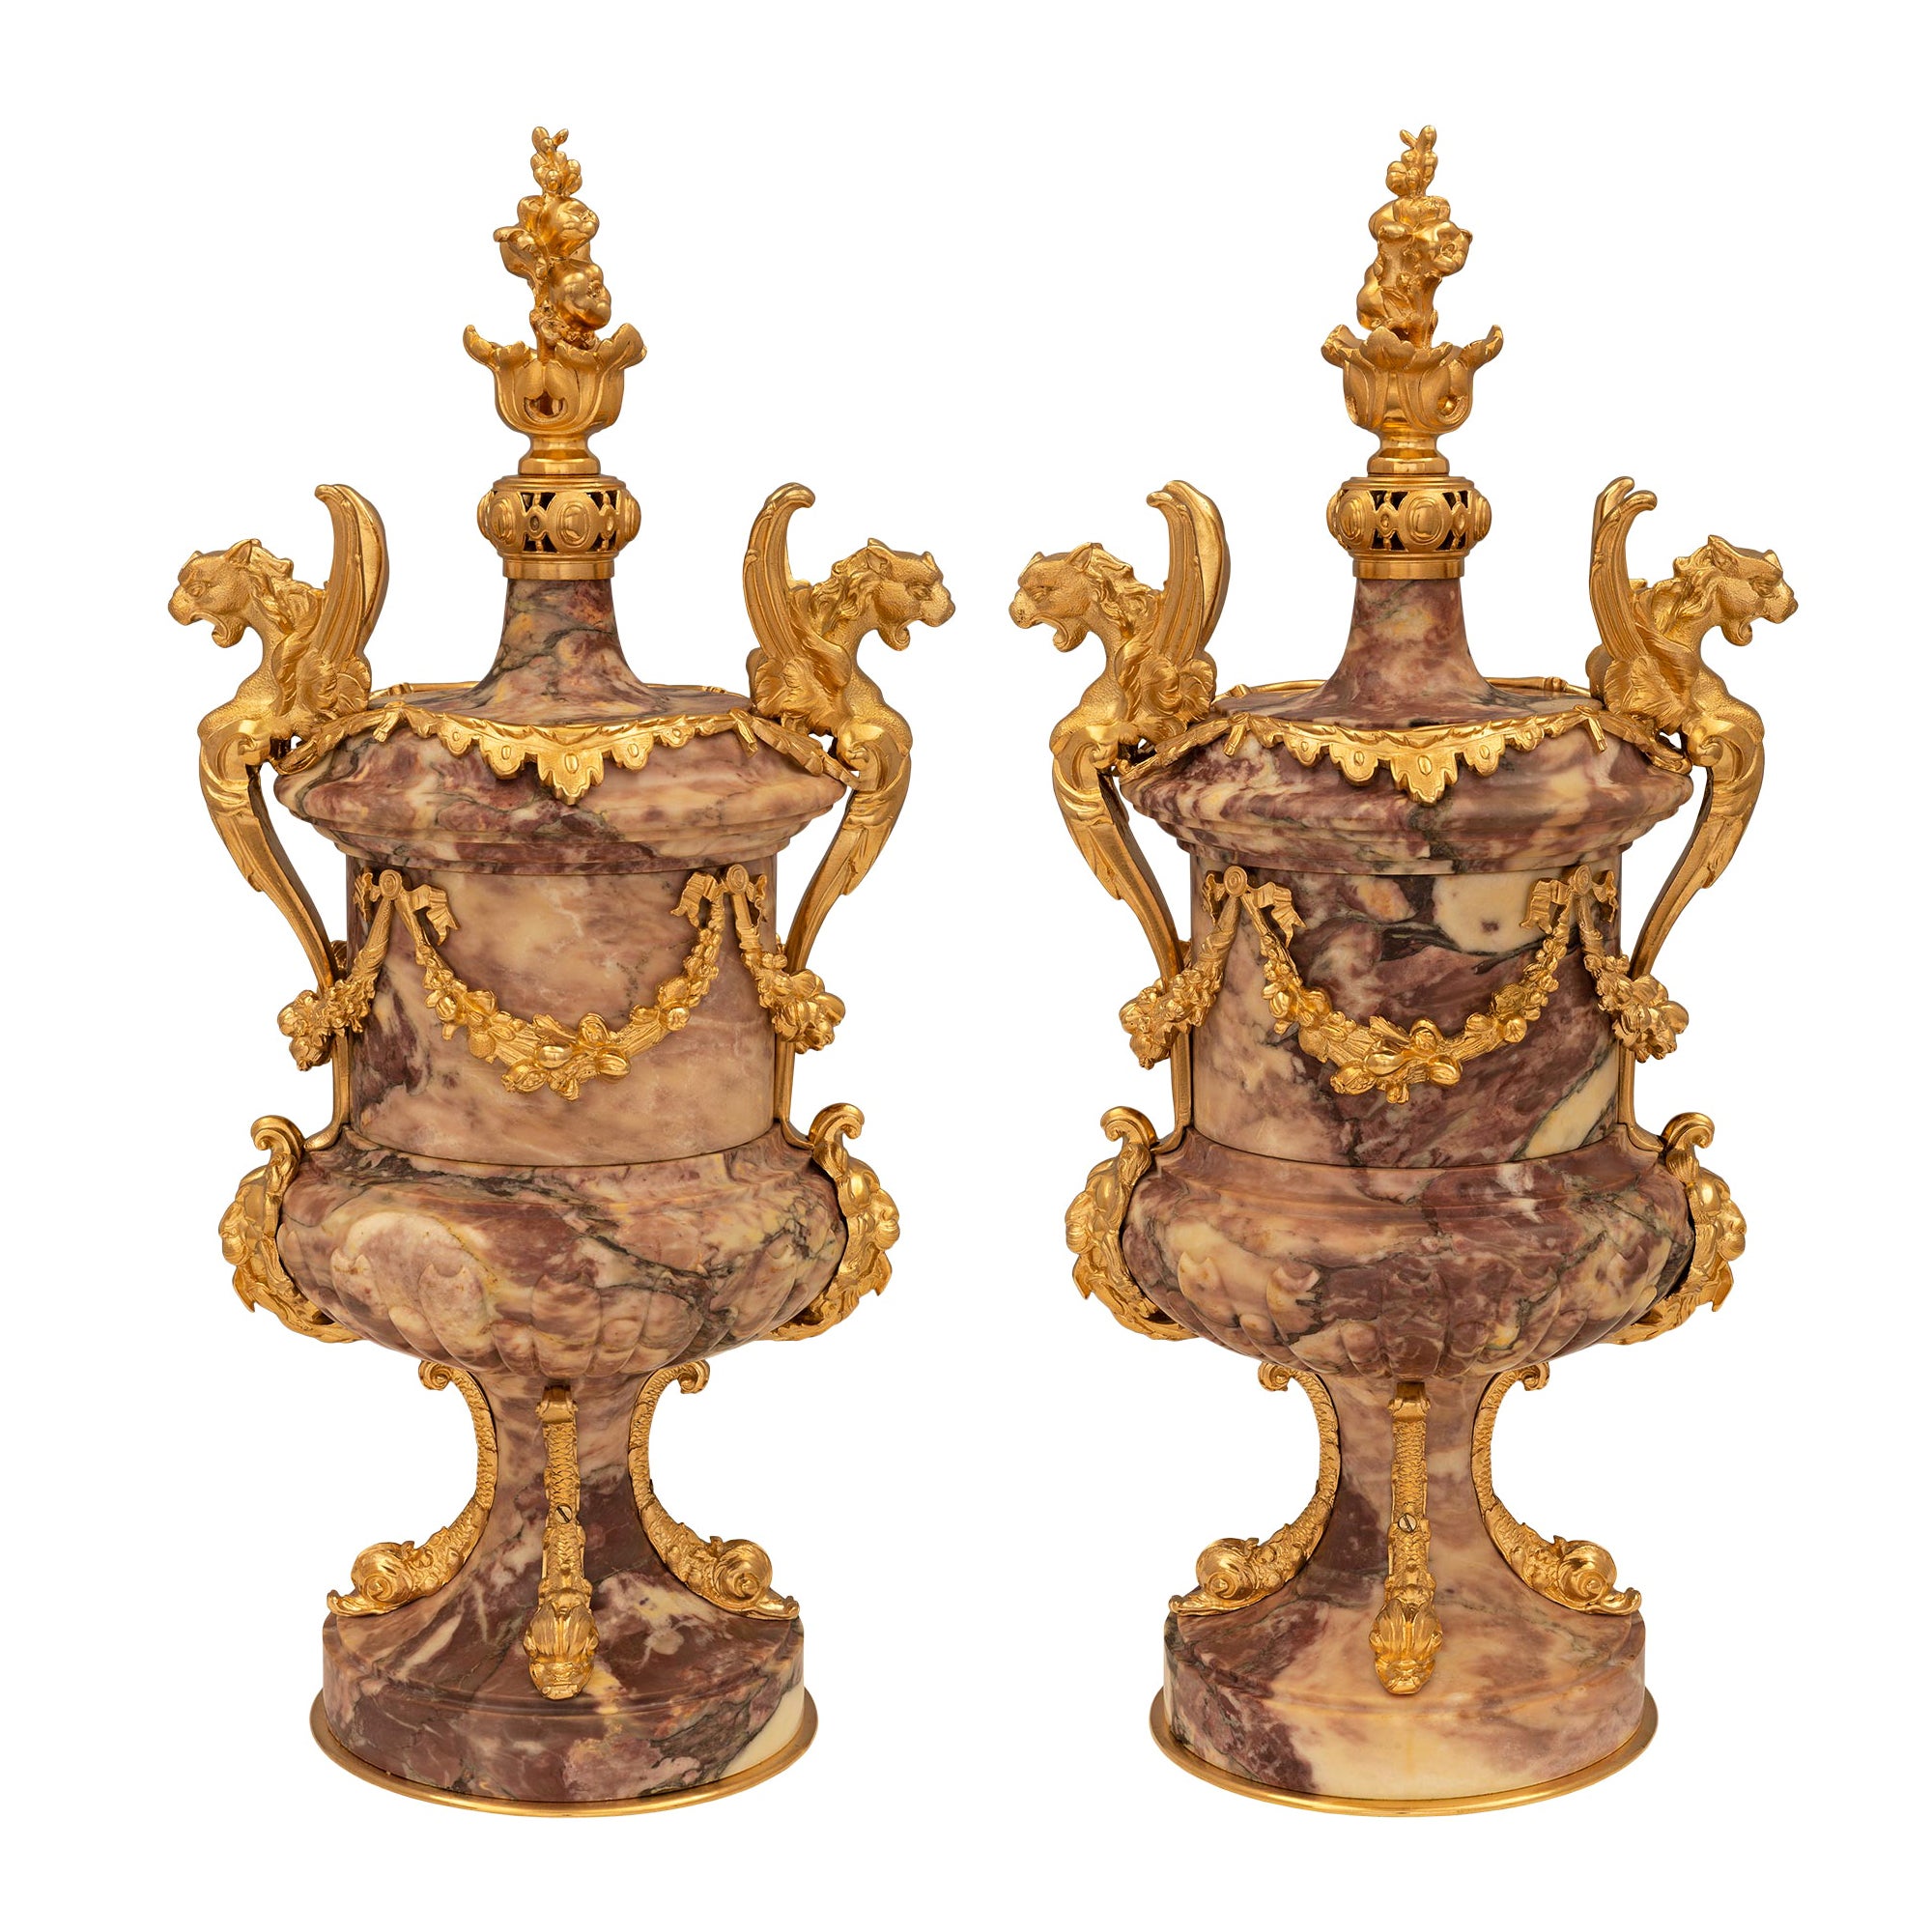 Paire d'urnes en bronze doré et marbre de style Renaissance du 19ème siècle français